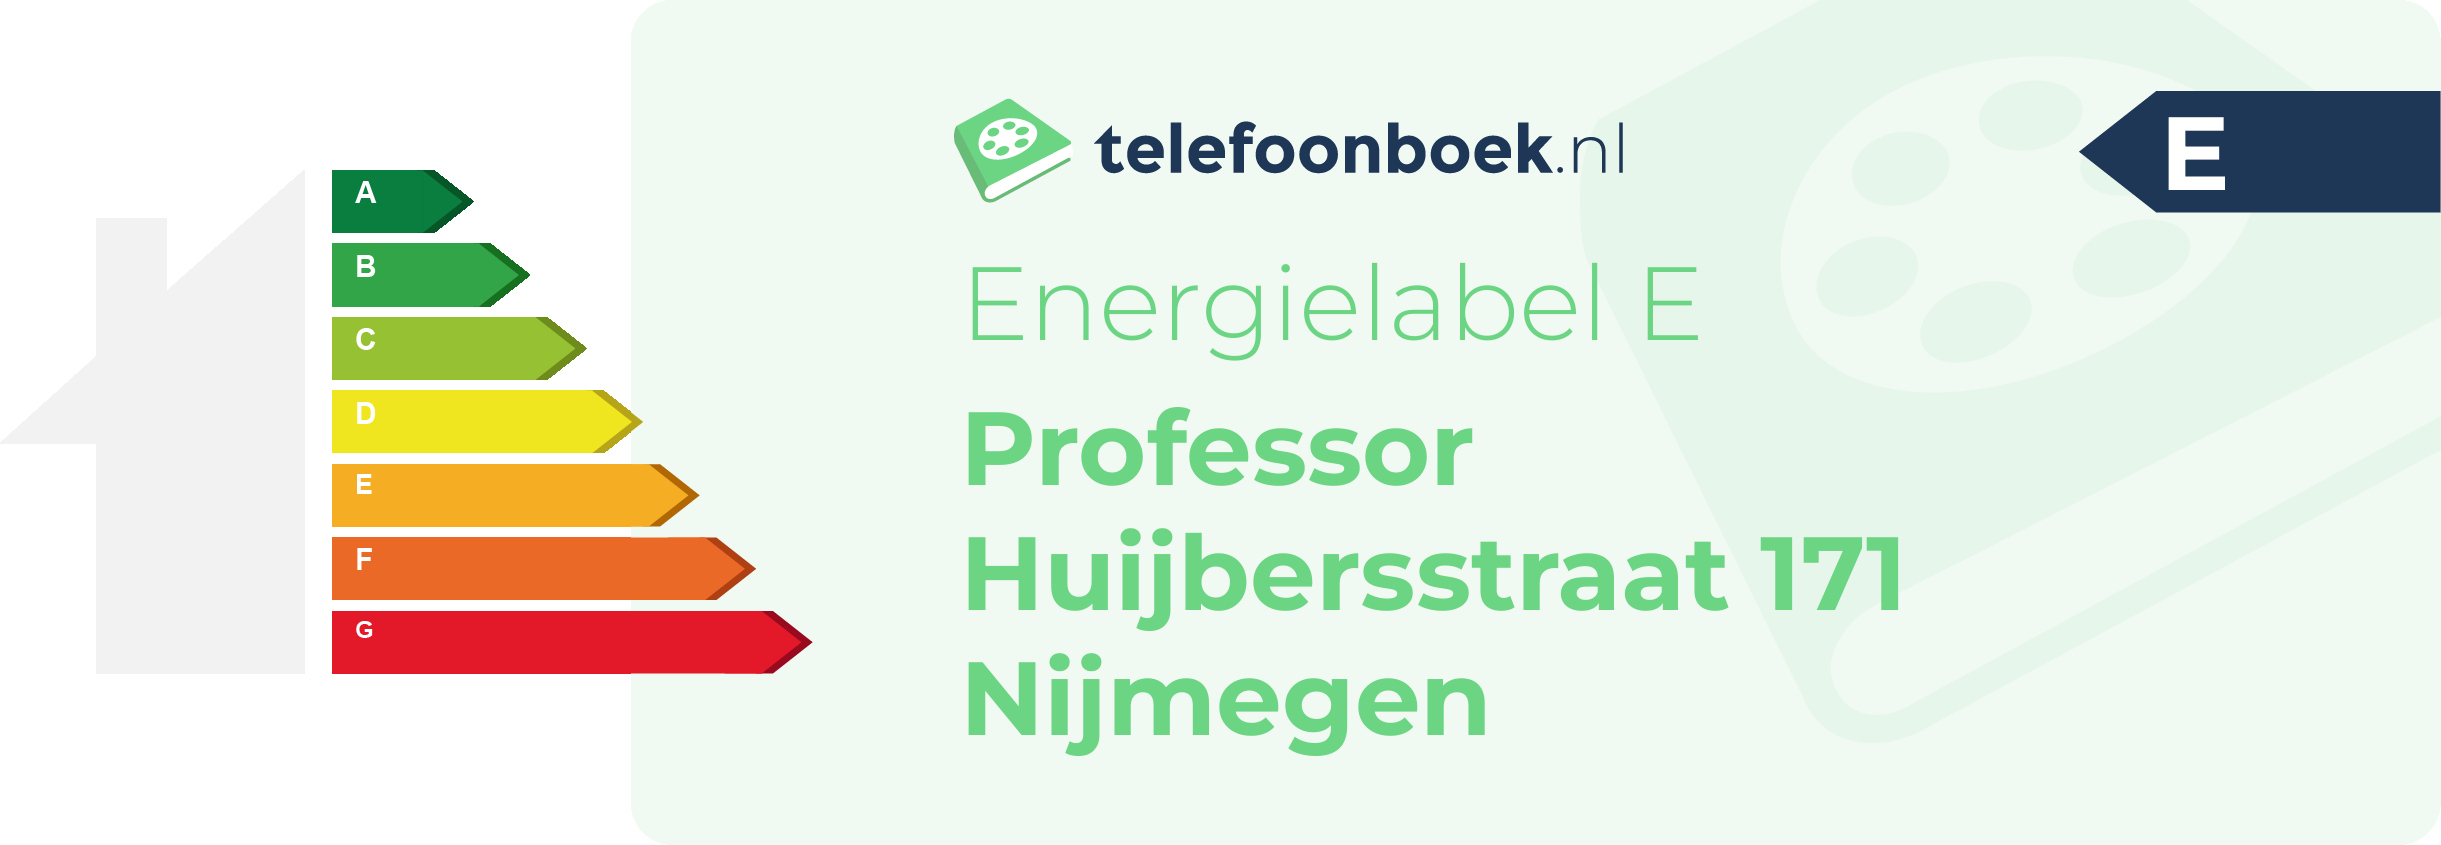 Energielabel Professor Huijbersstraat 171 Nijmegen